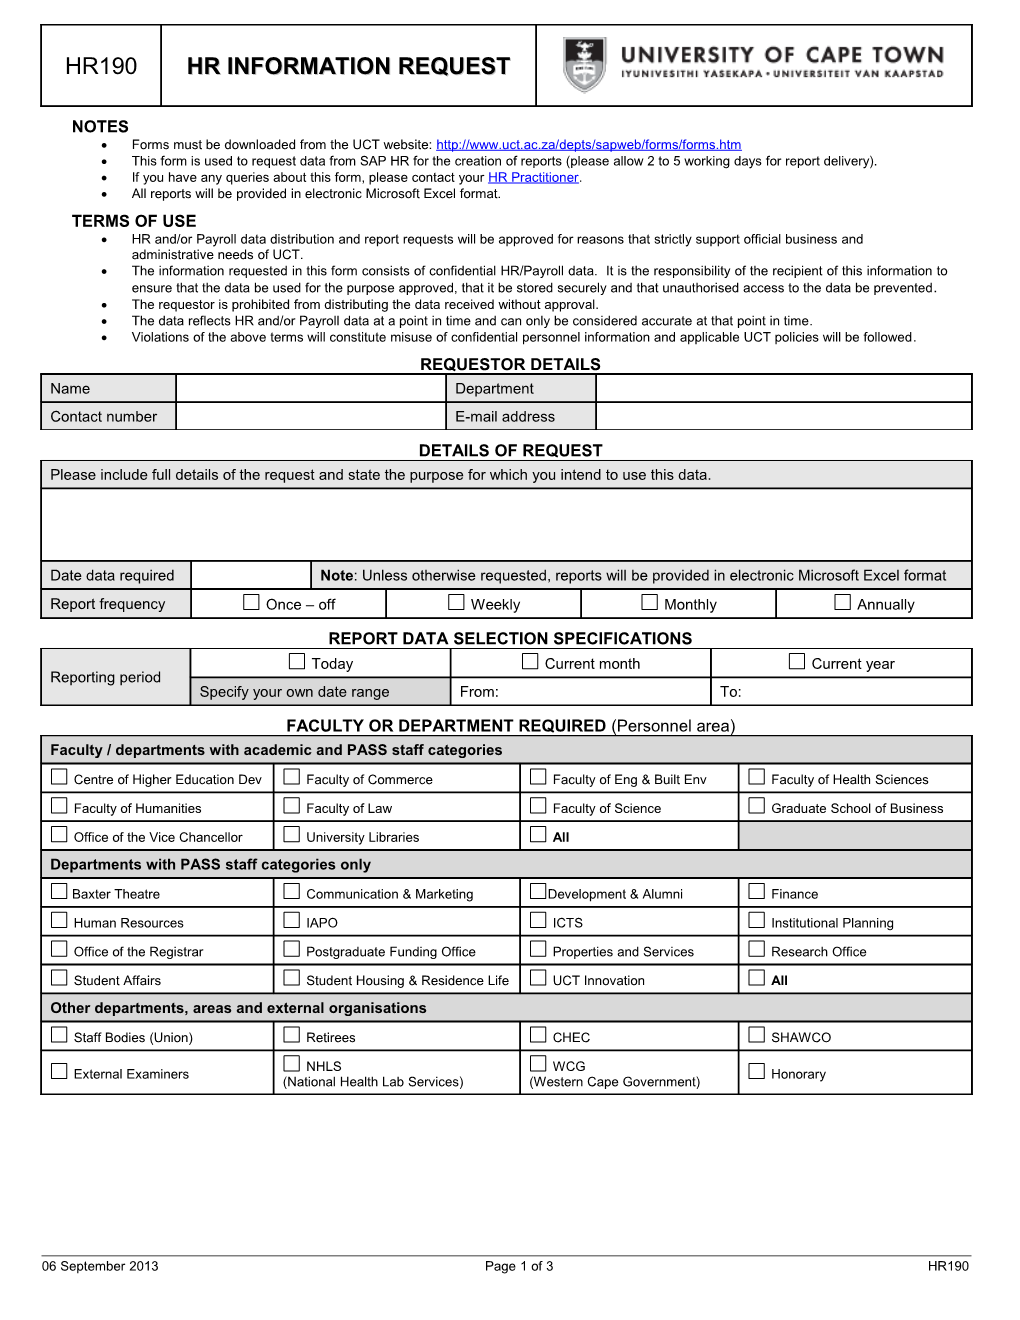 HR Information Request Form